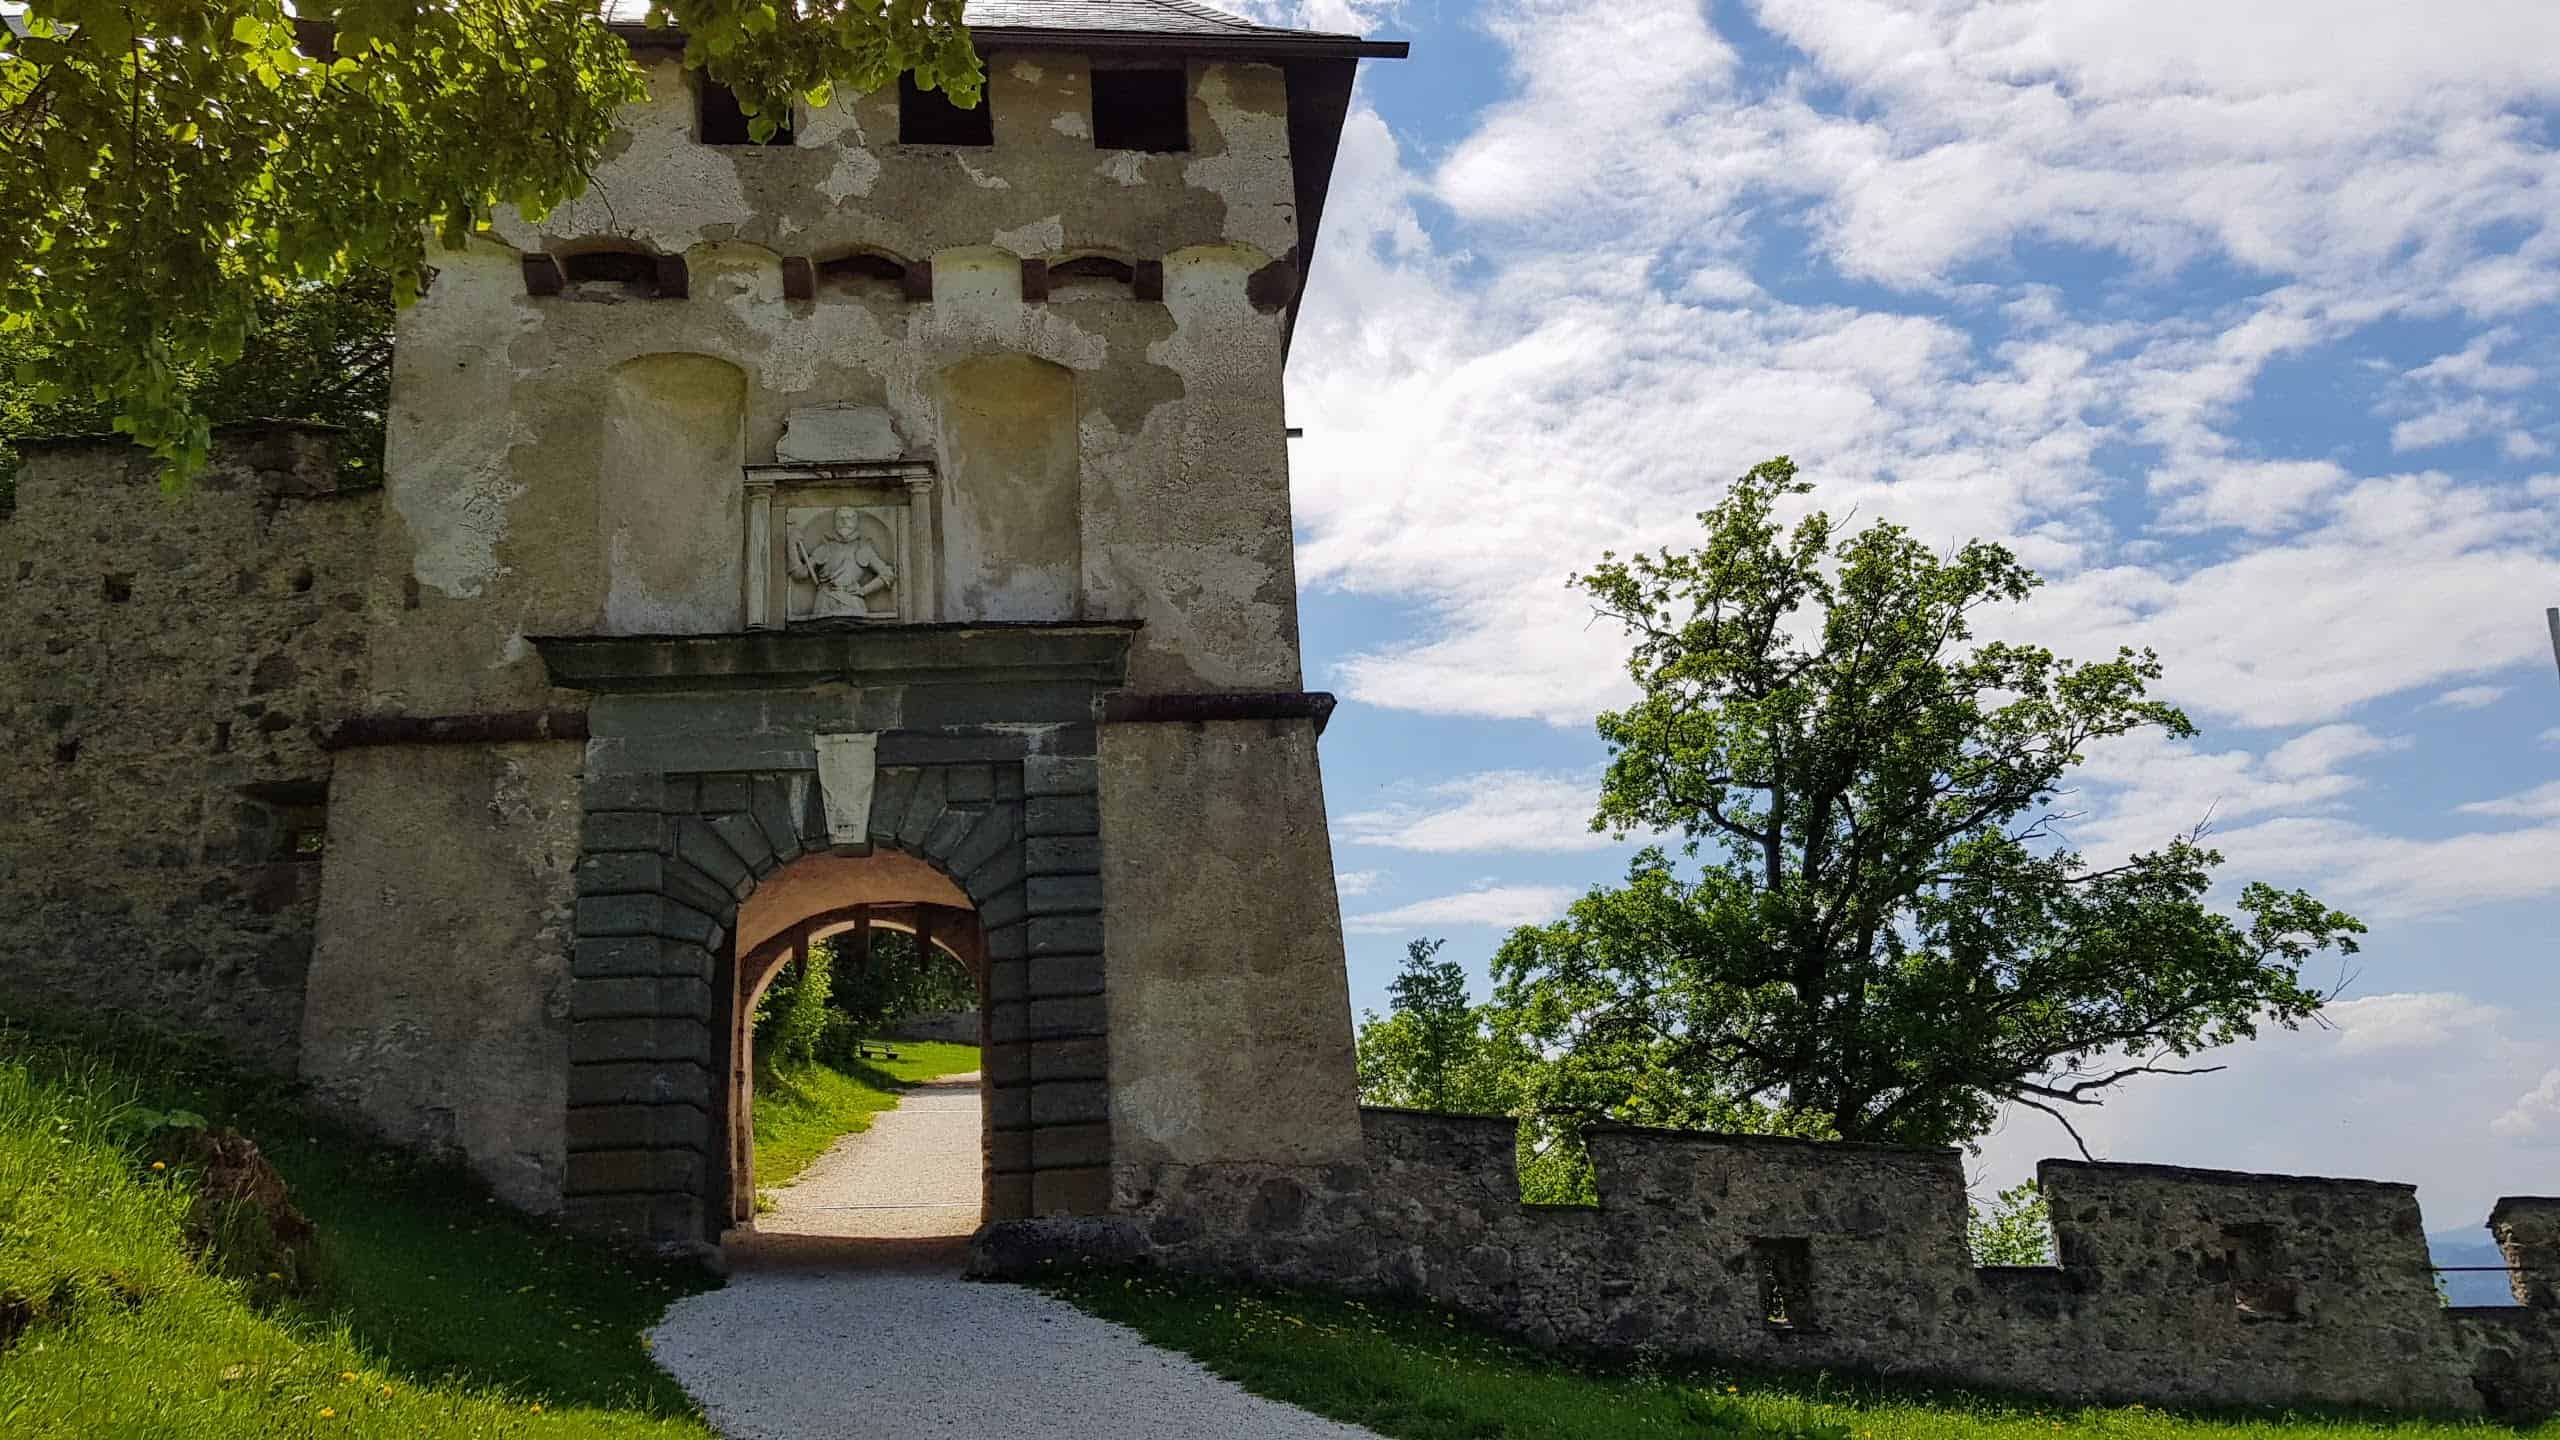 14 Tore begleiten Wanderer und Besucher beim Besuch der Burg Hochosterwitz. Gut beschildert und kinderwagentauglich.